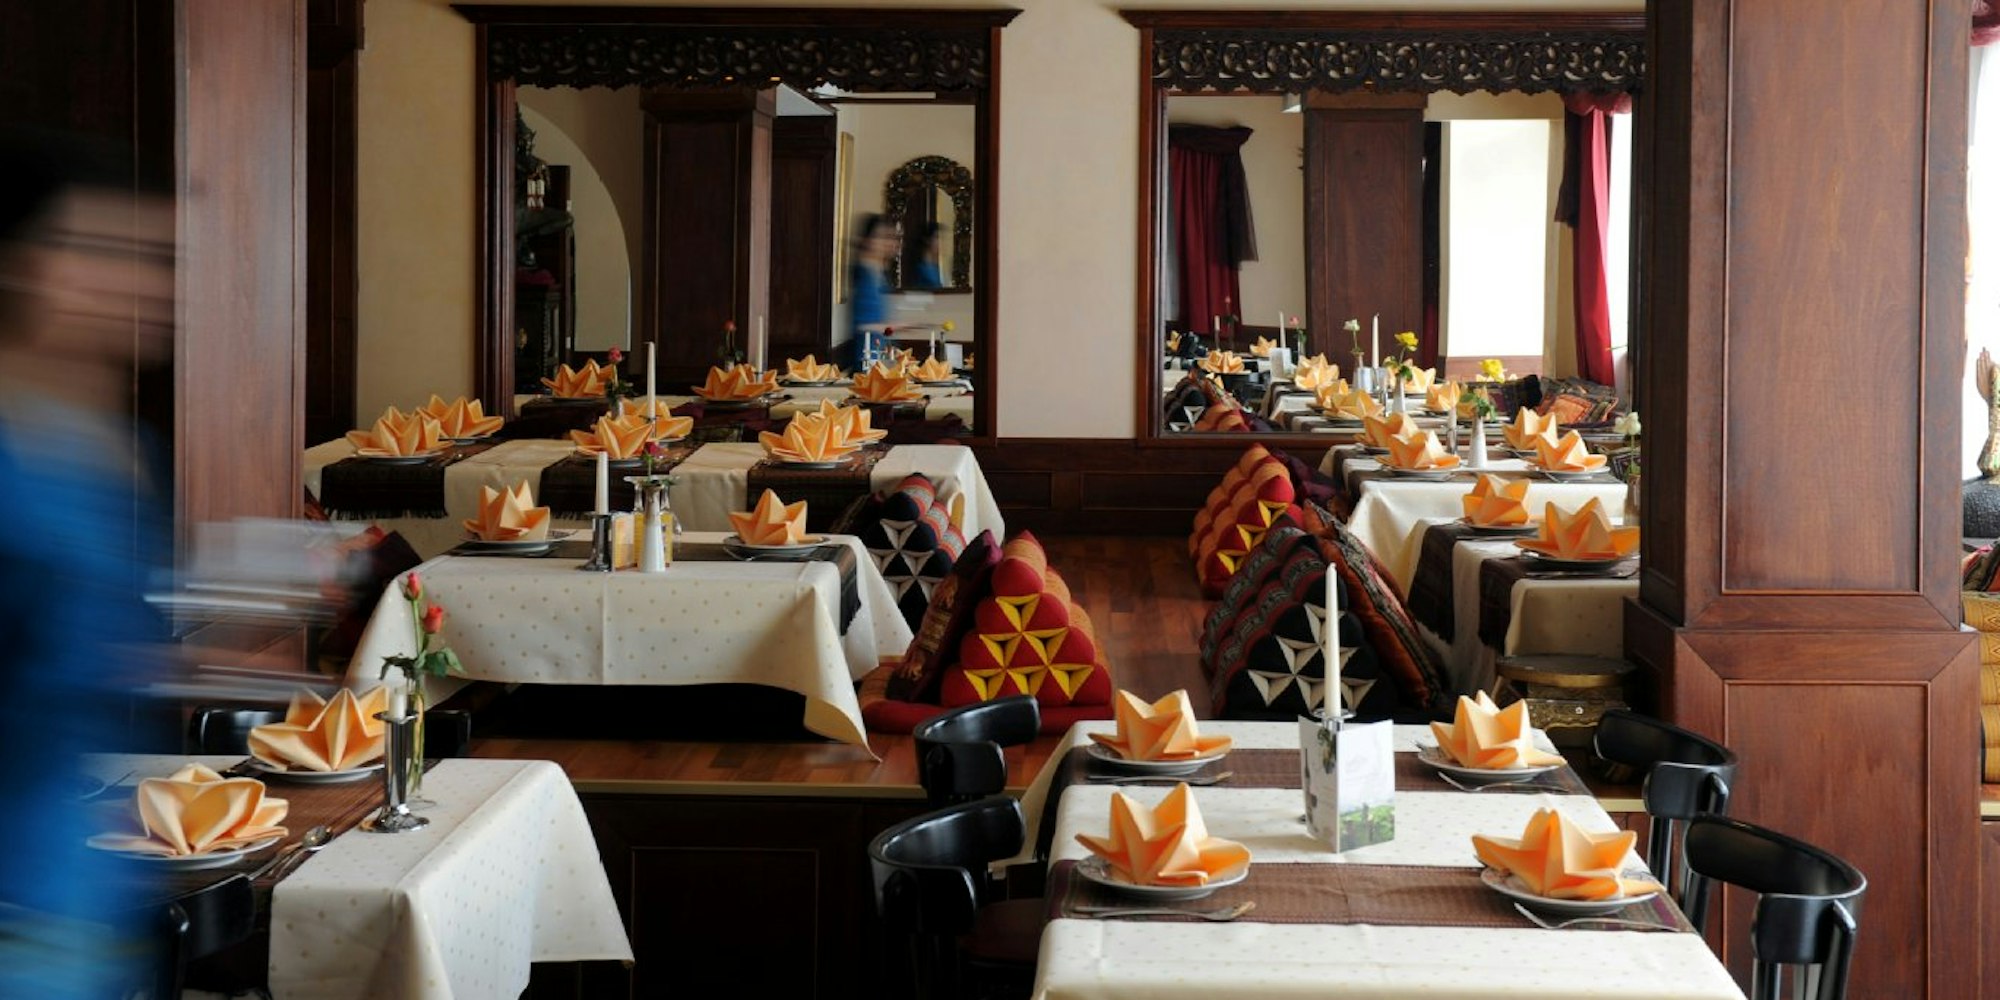 Im Lannathai gibt es sowohl eingedeckte Tische mit Stühlen als auch Sitzmatten an niedrigen Tischen. Bild: Stefan Worring